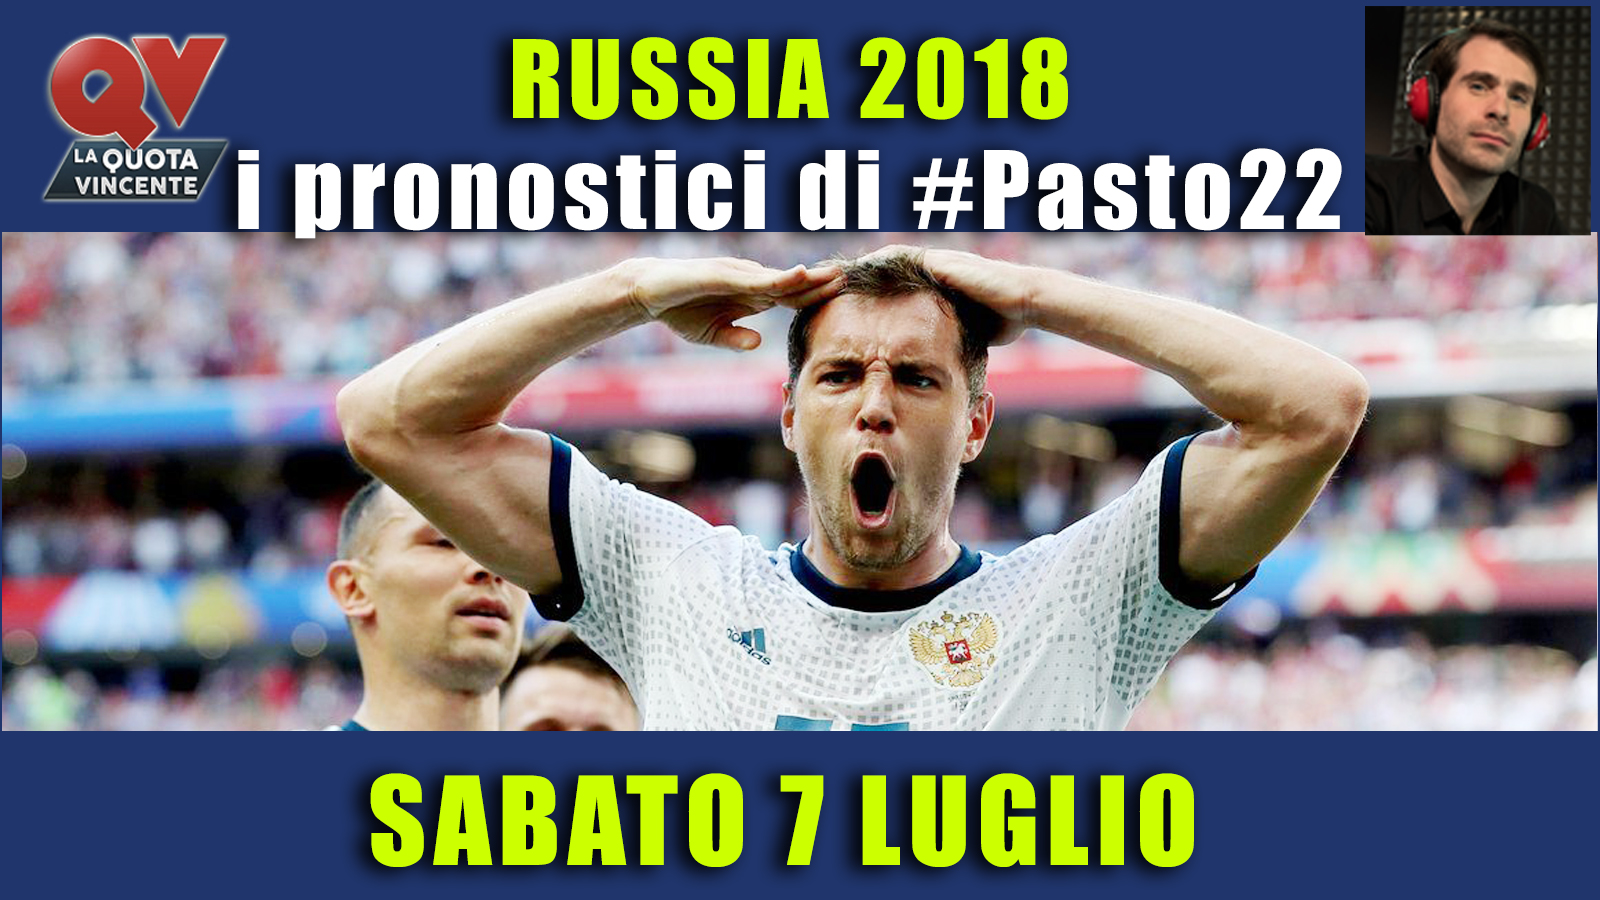 Pronostici Mondiali 7 luglio: le dritte di #Pasto22 a Russia 2018